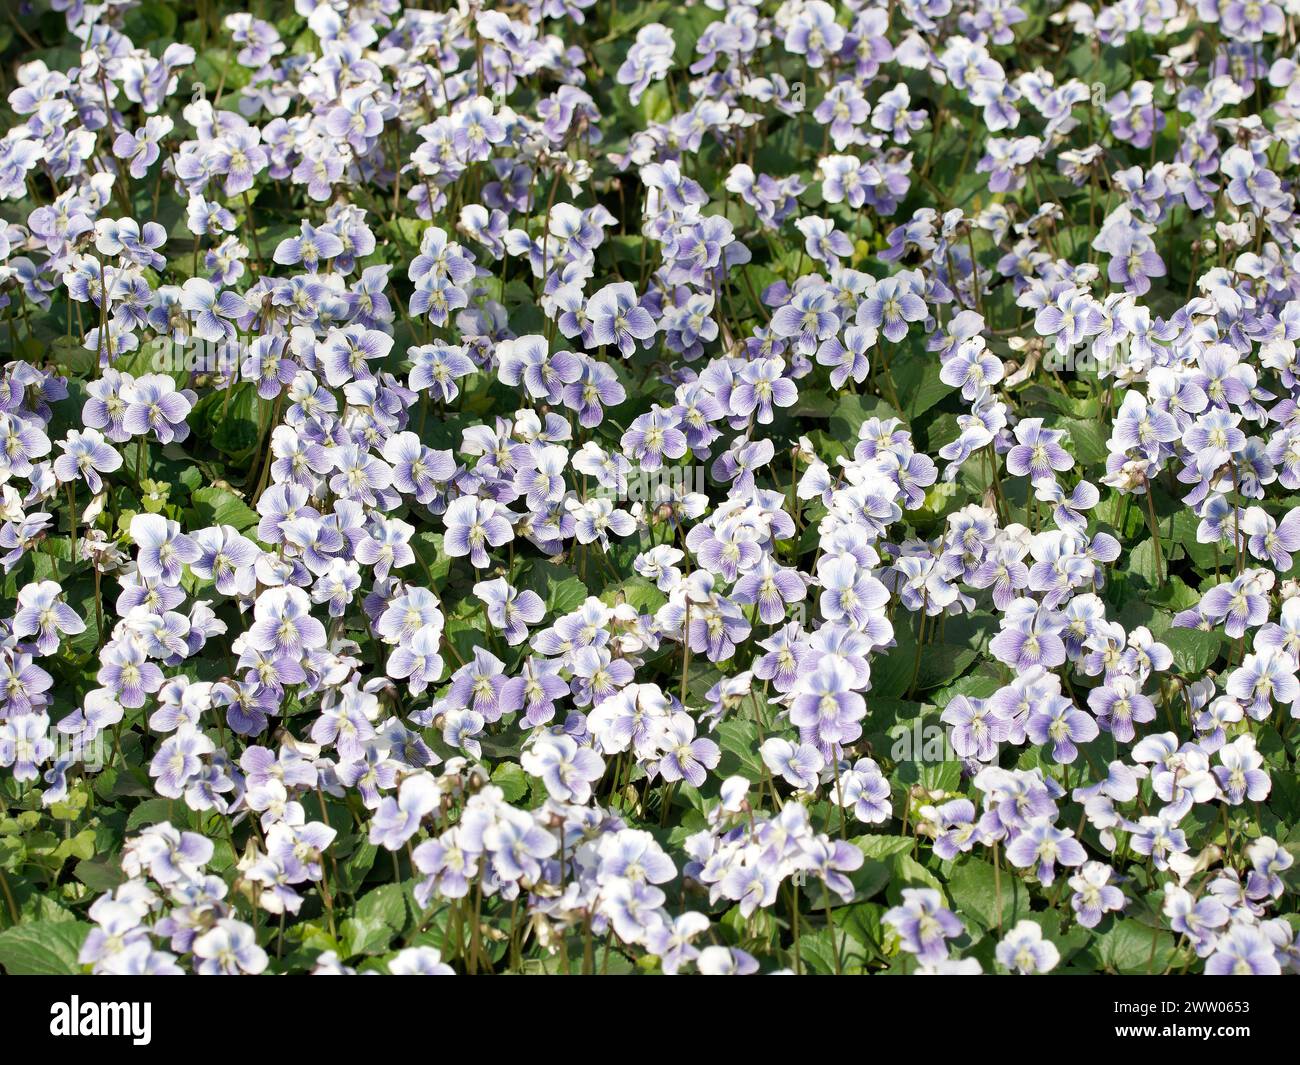 common blue violet, common meadow violet, purple violet, woolly blue violet, hooded violet, Violette de la Pentecôte, Viola sororia, amerikai ibolya Stock Photo